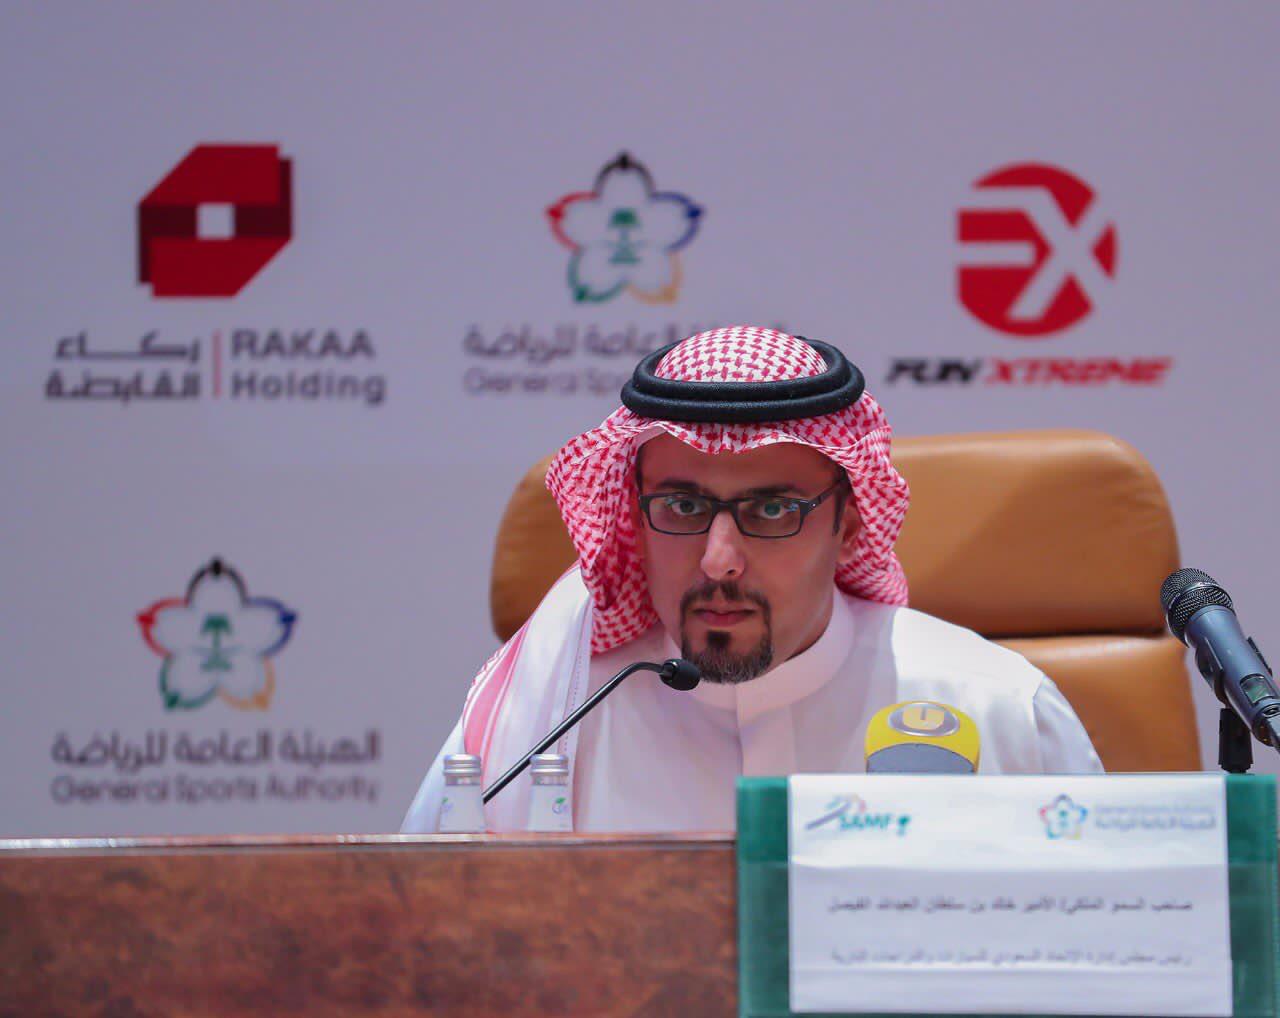 خالد بن سلطان يعلن الجدول الزمني لبطولة الكارتينج 2019